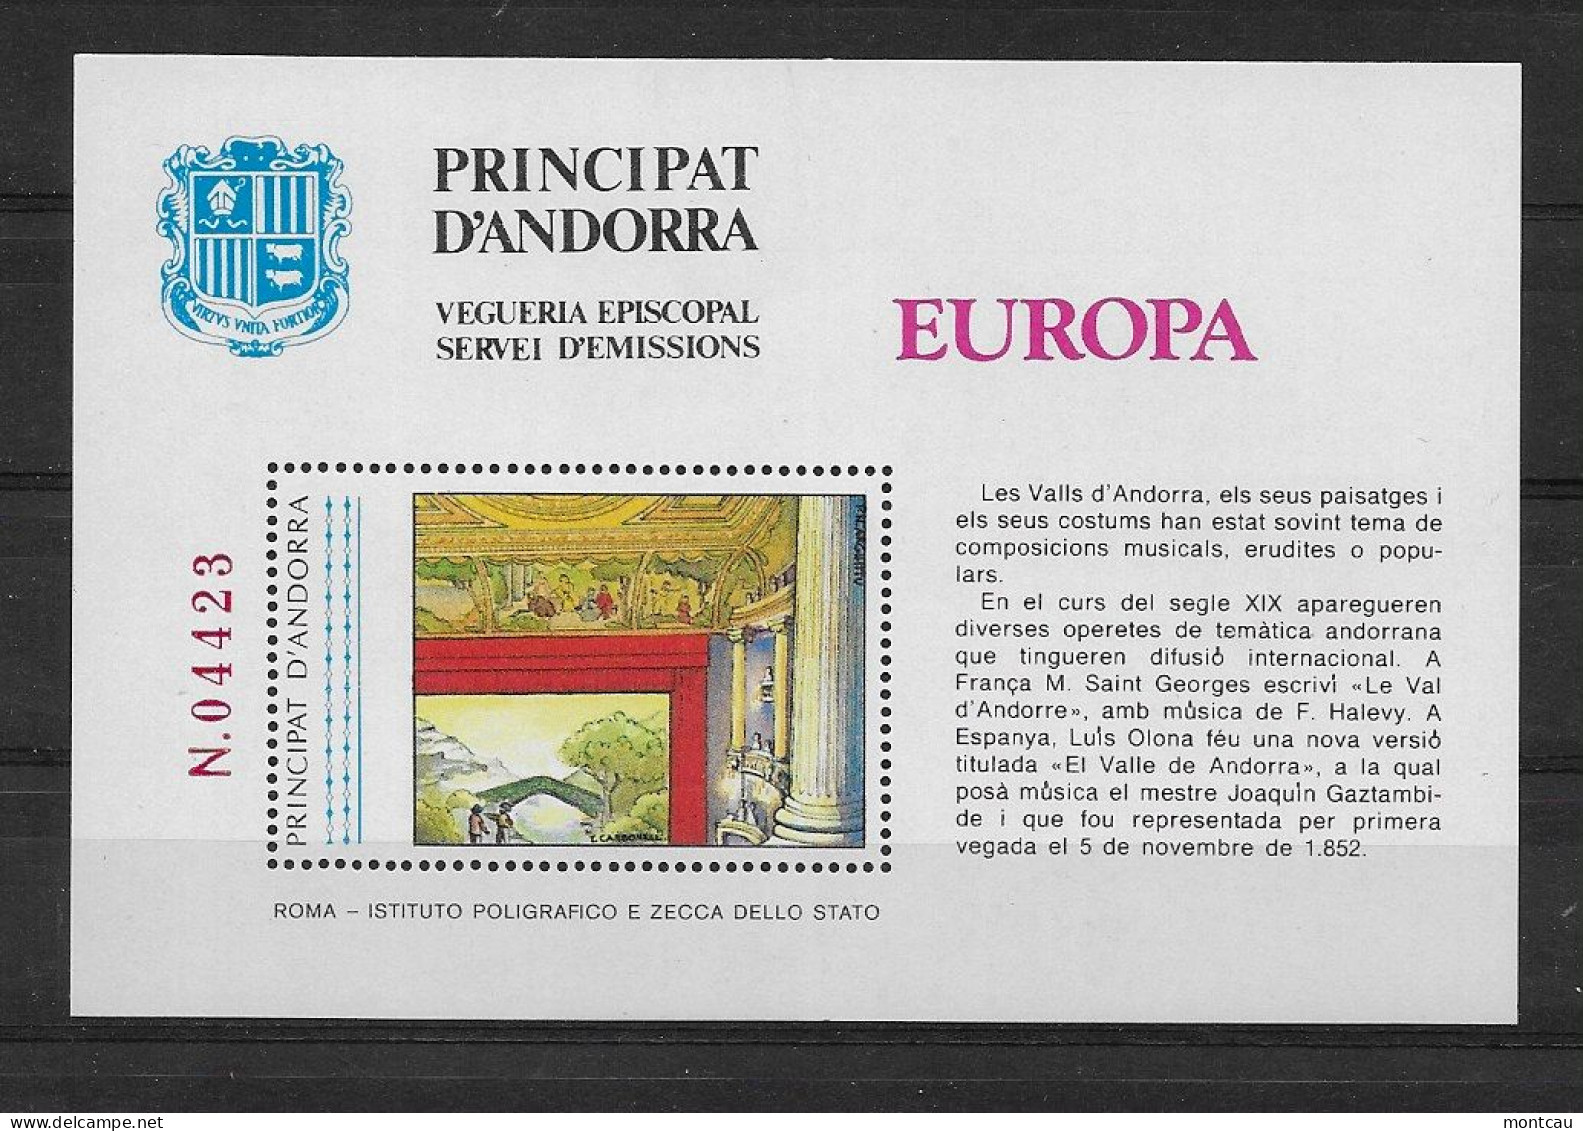 Andorra - 1985 - Vegueria Episcopal Europa - Bischöfliche Viguerie